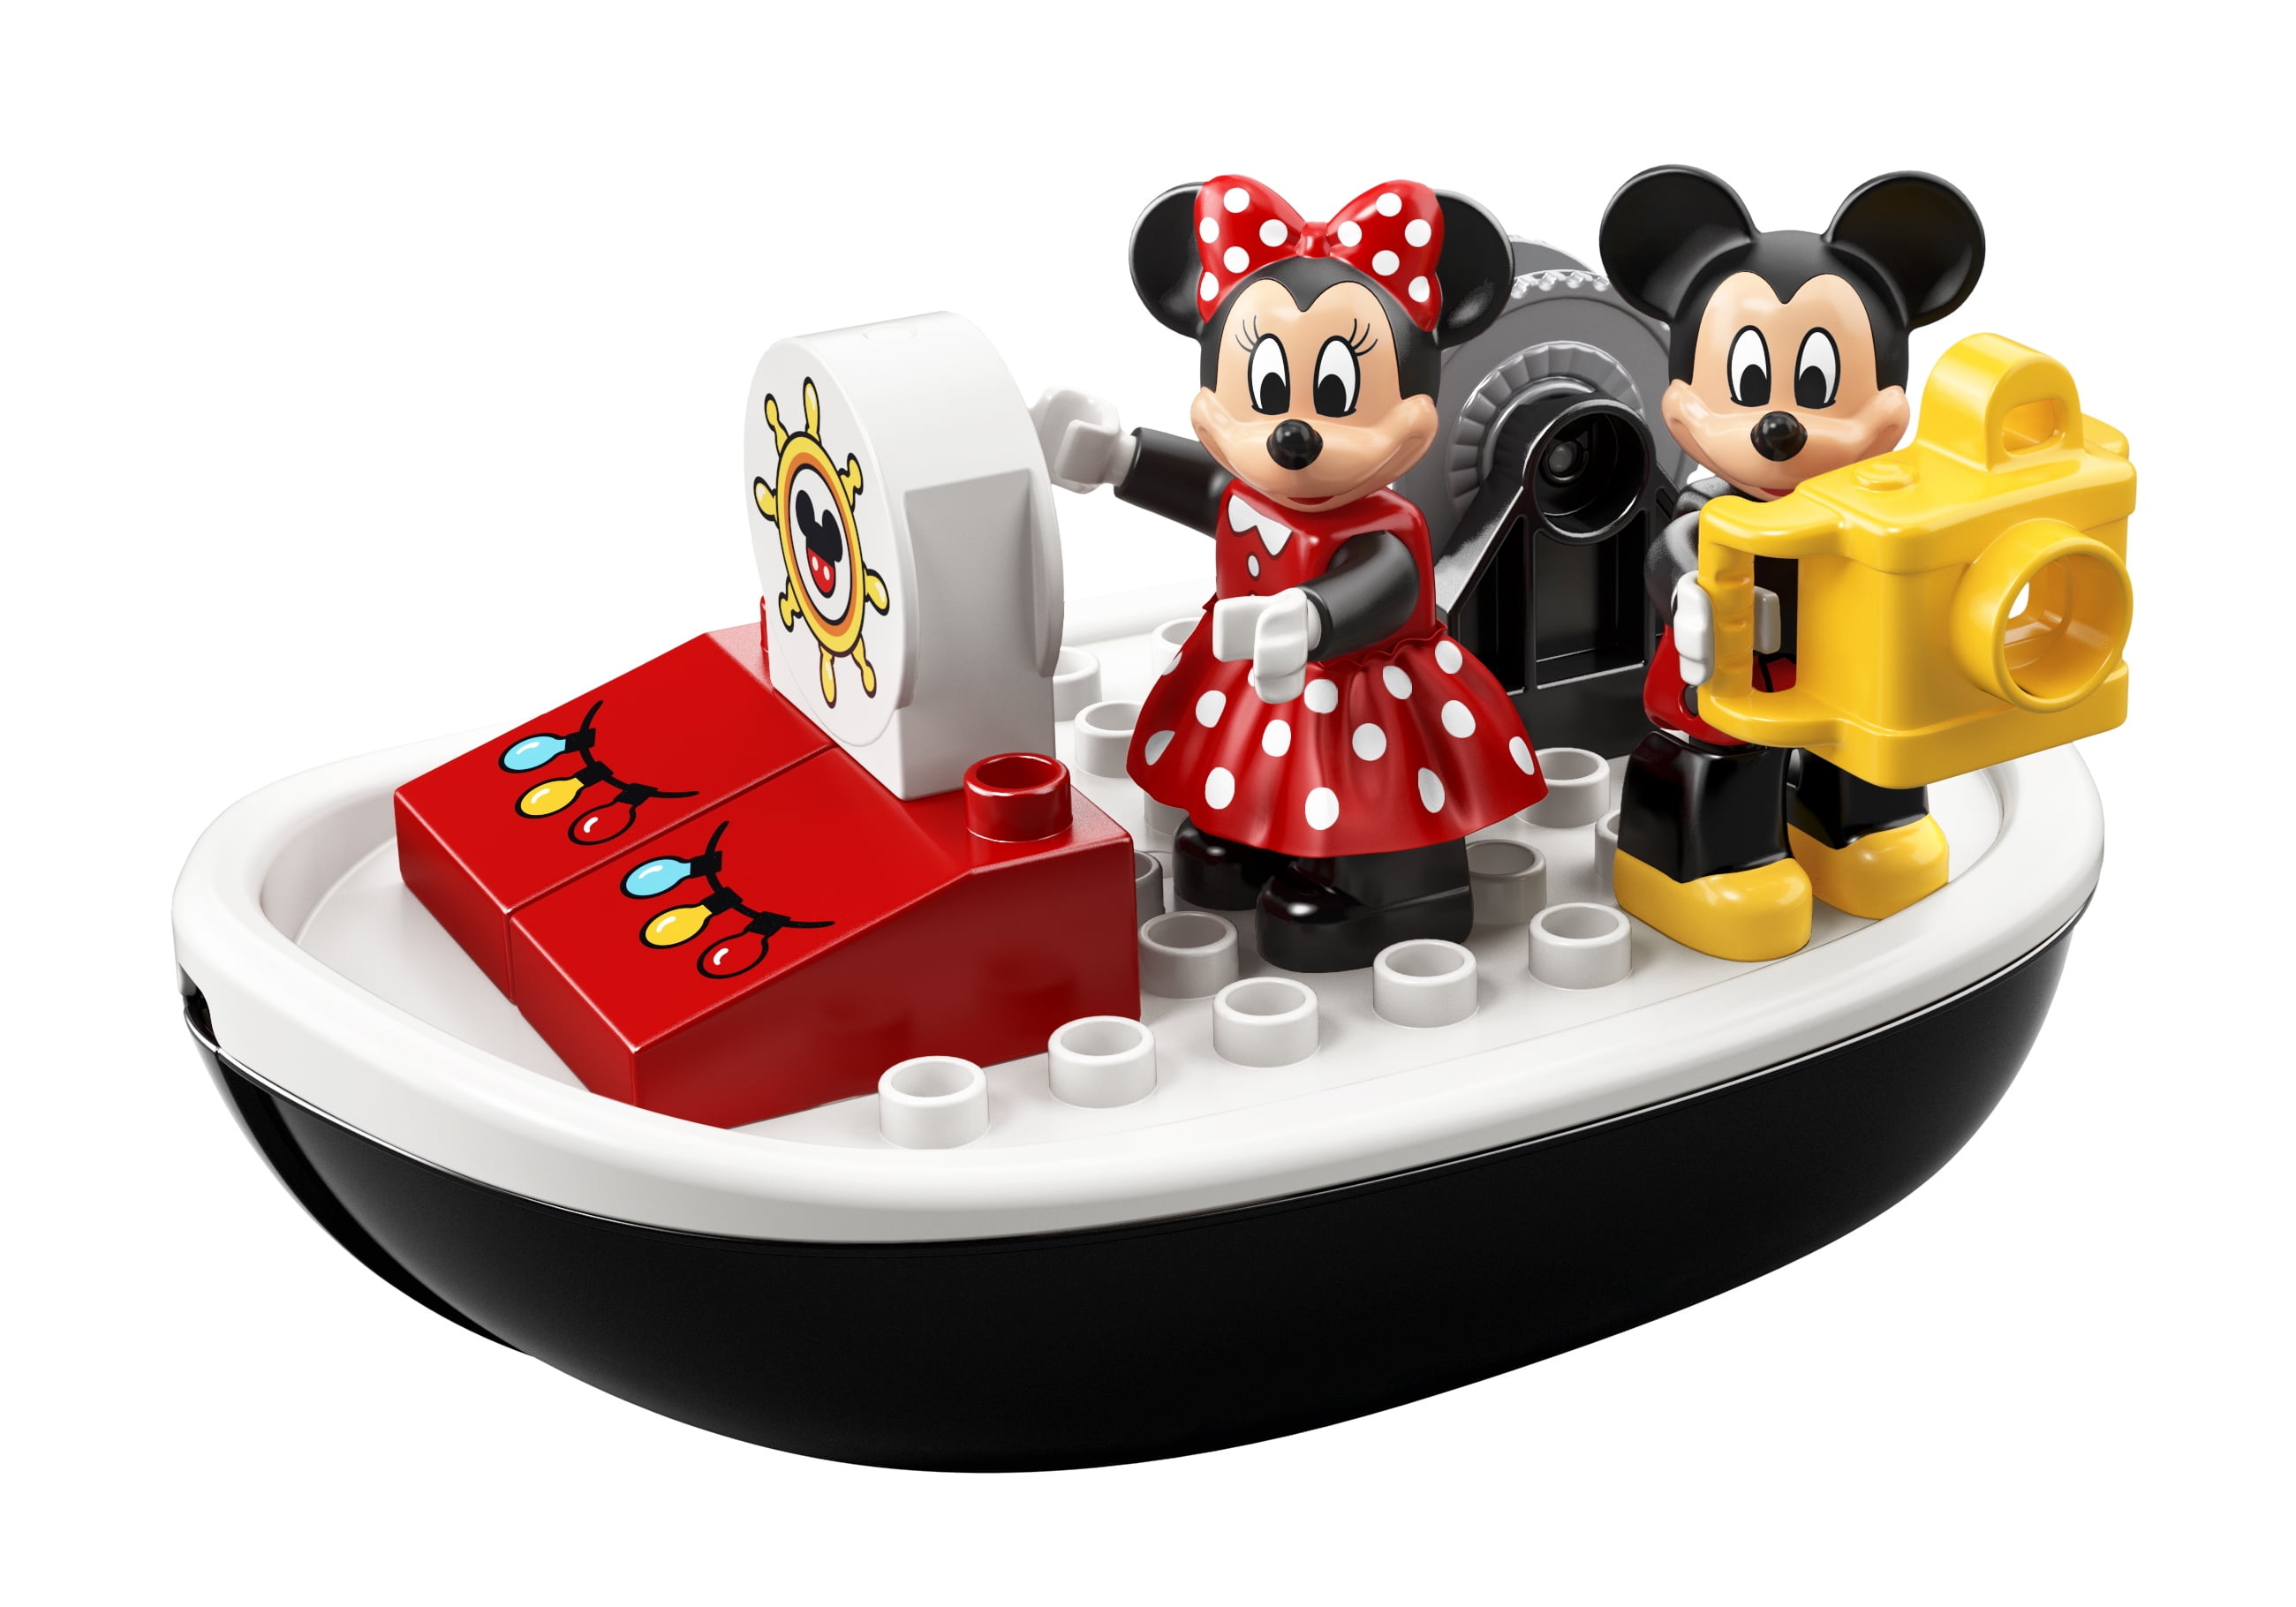 DUPLO Disney Mickey's Boat 10881 Building Set (28 Pieces) - Walmart.com